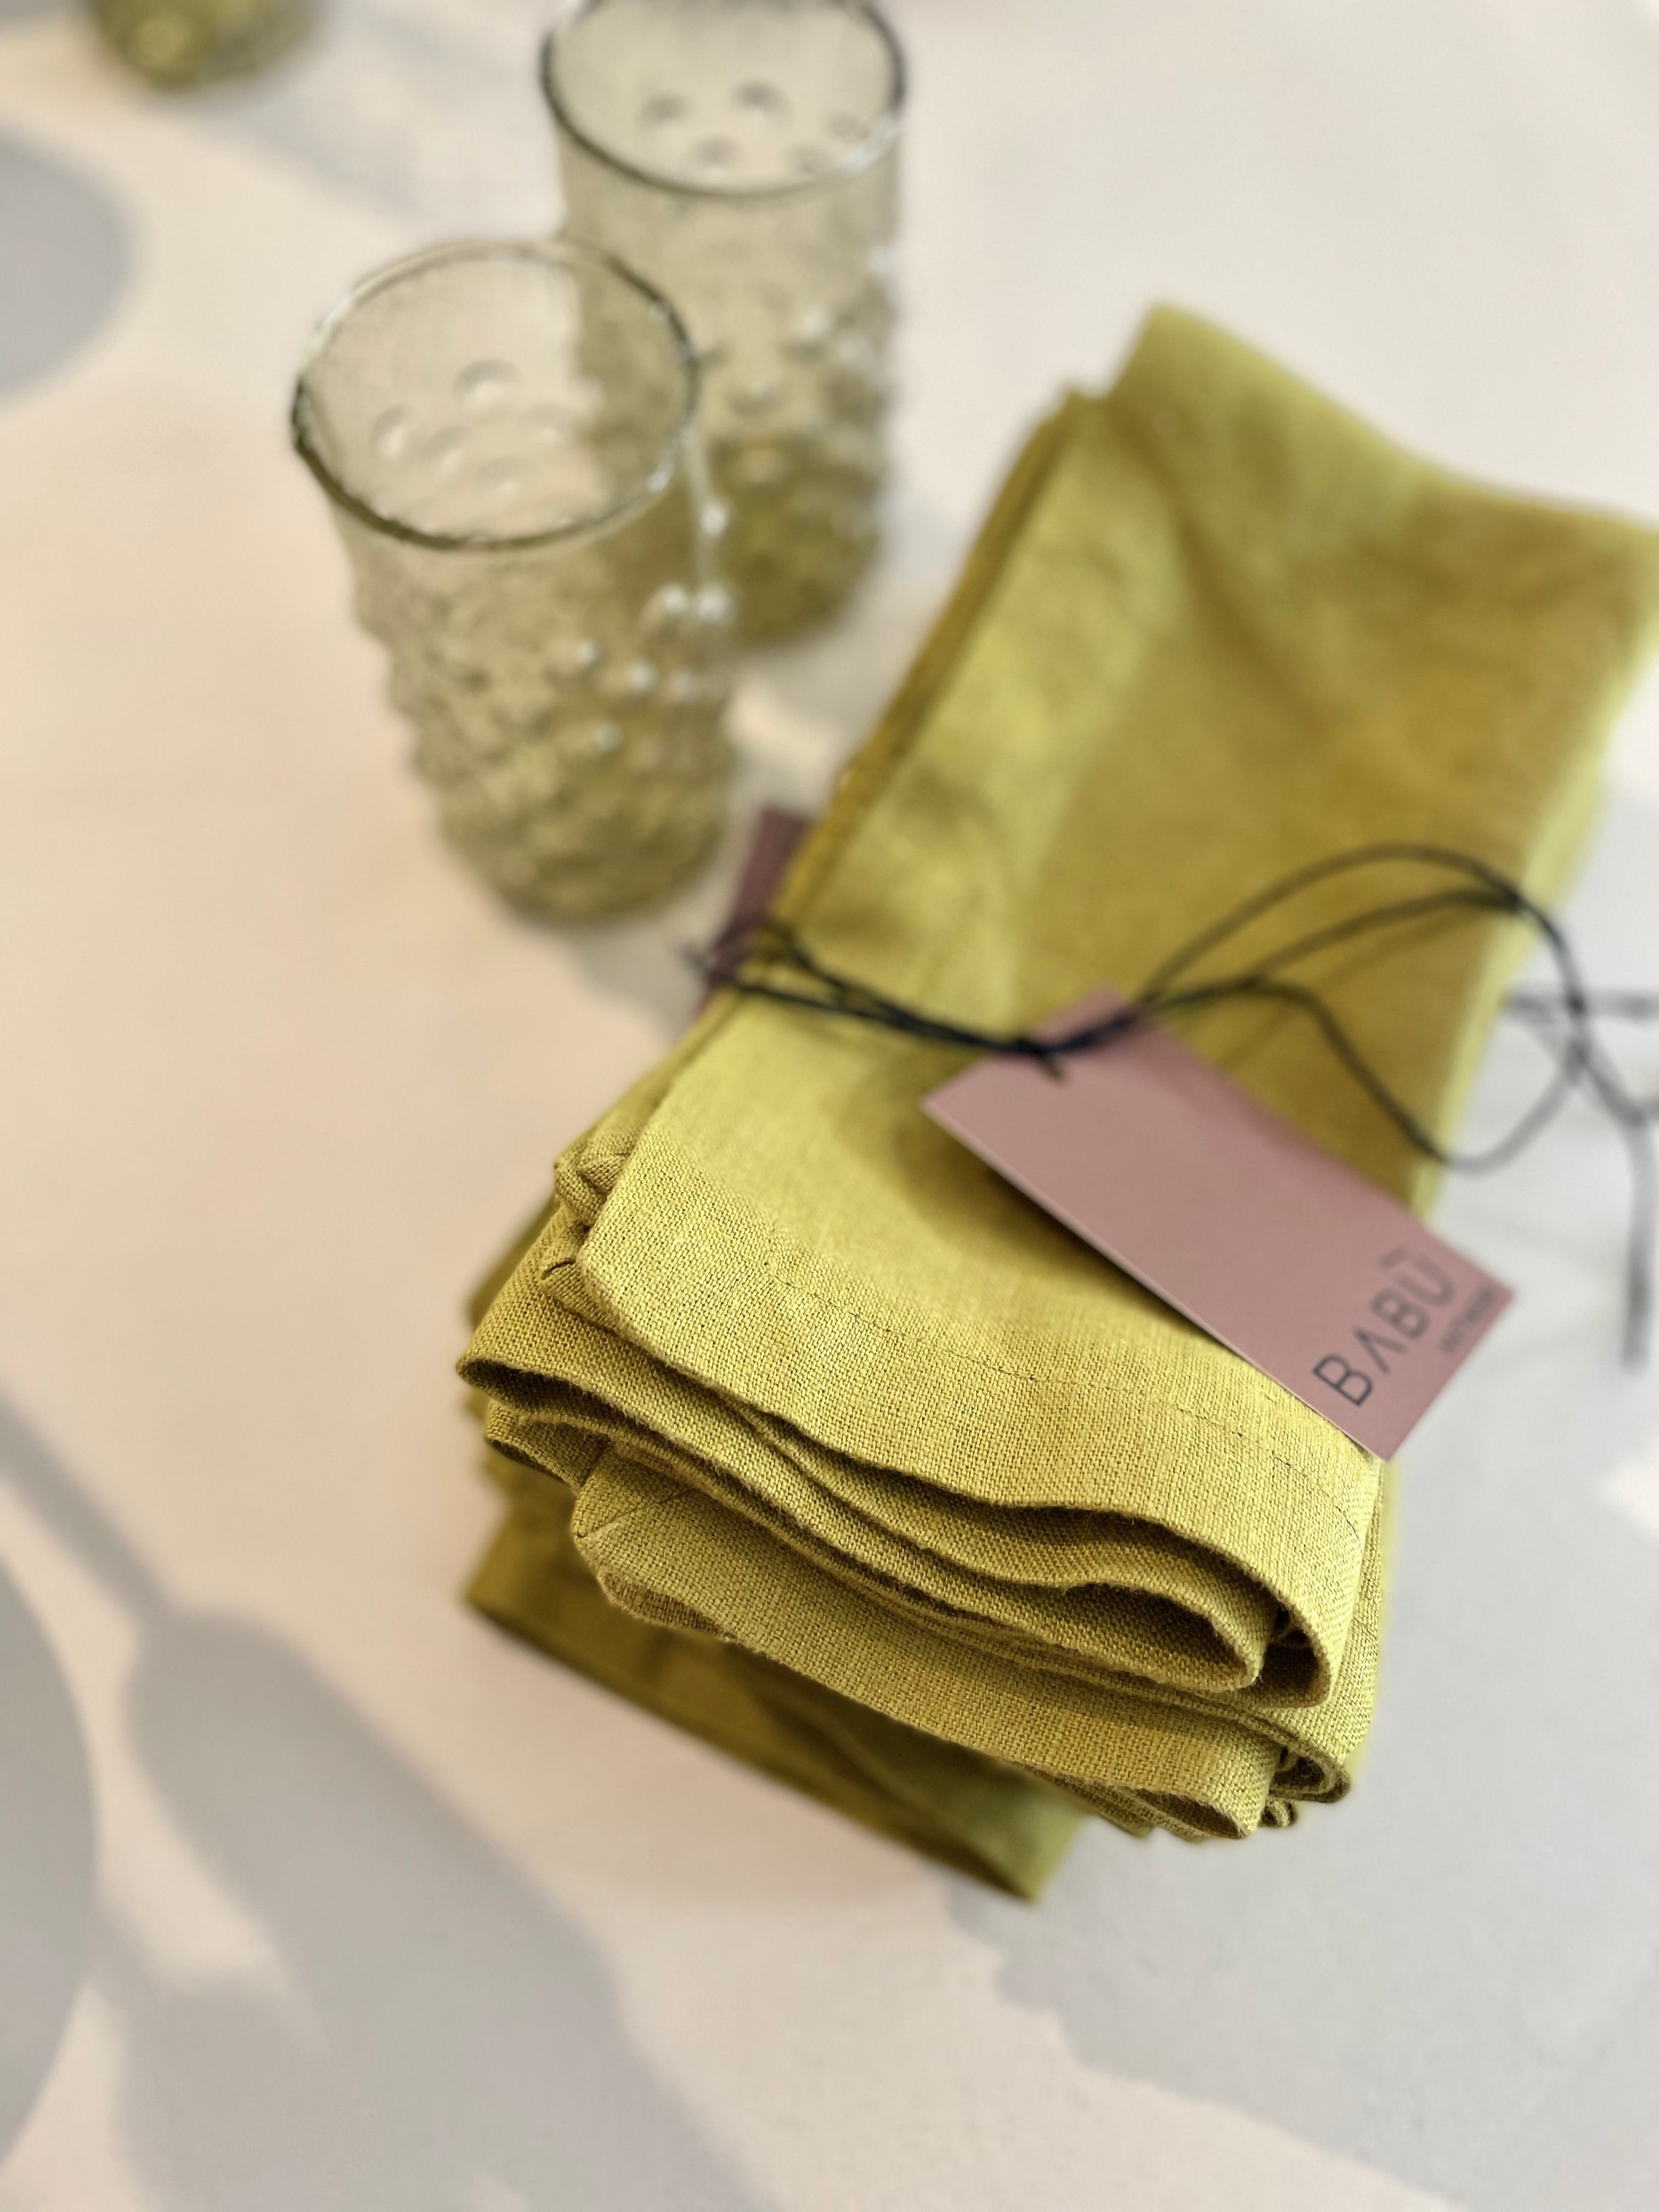 Moss green linen napkins - set of 4